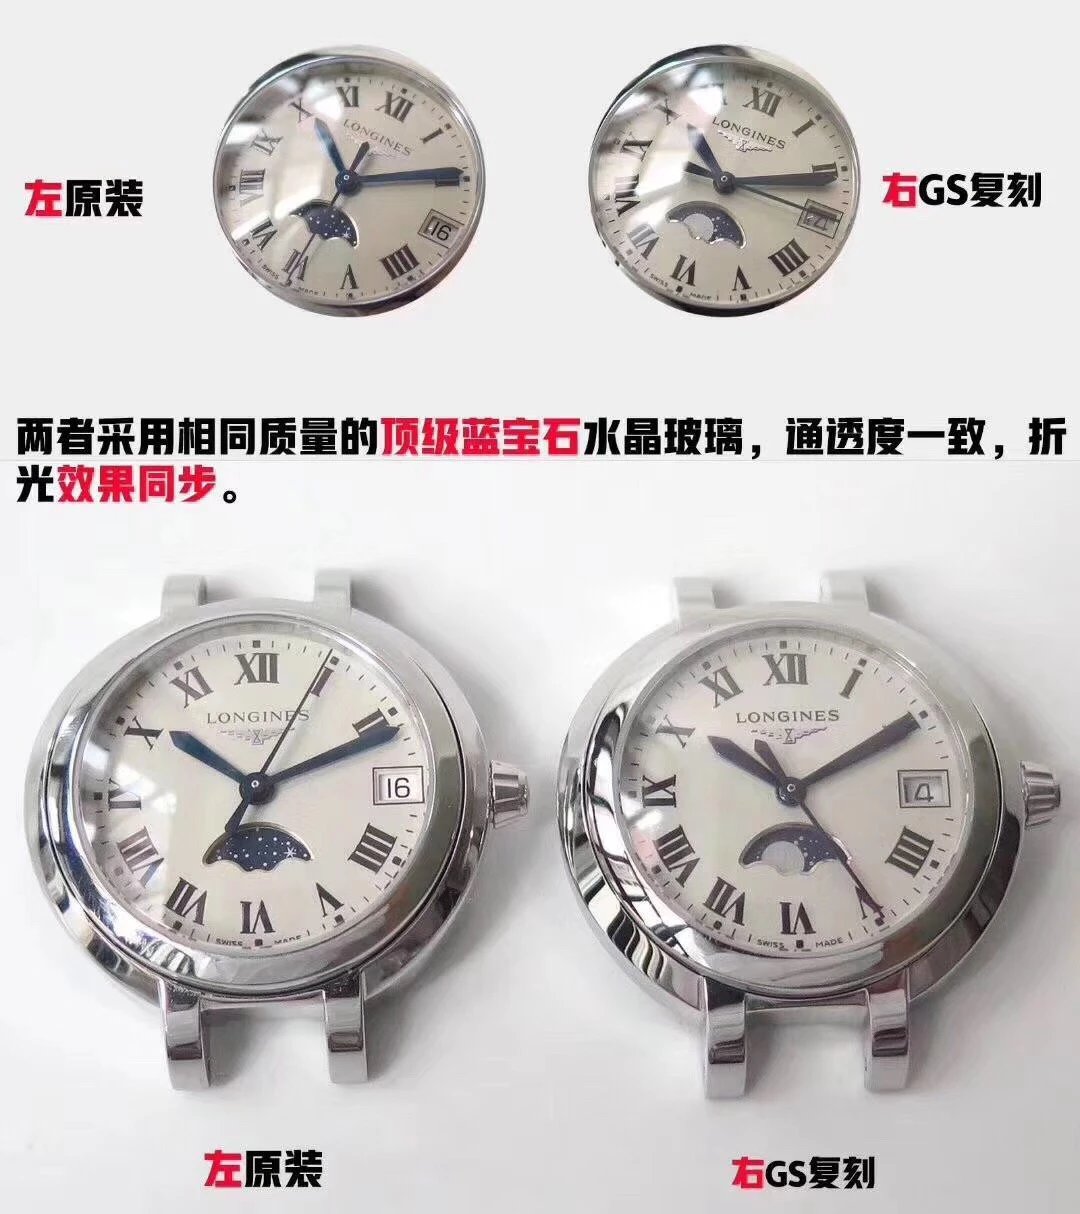 gs厂浪琴心月系列月相女士腕表，月相功能同步原版,尺寸30.5X9.4mm采用带有月相功能的瑞士石英机芯女表